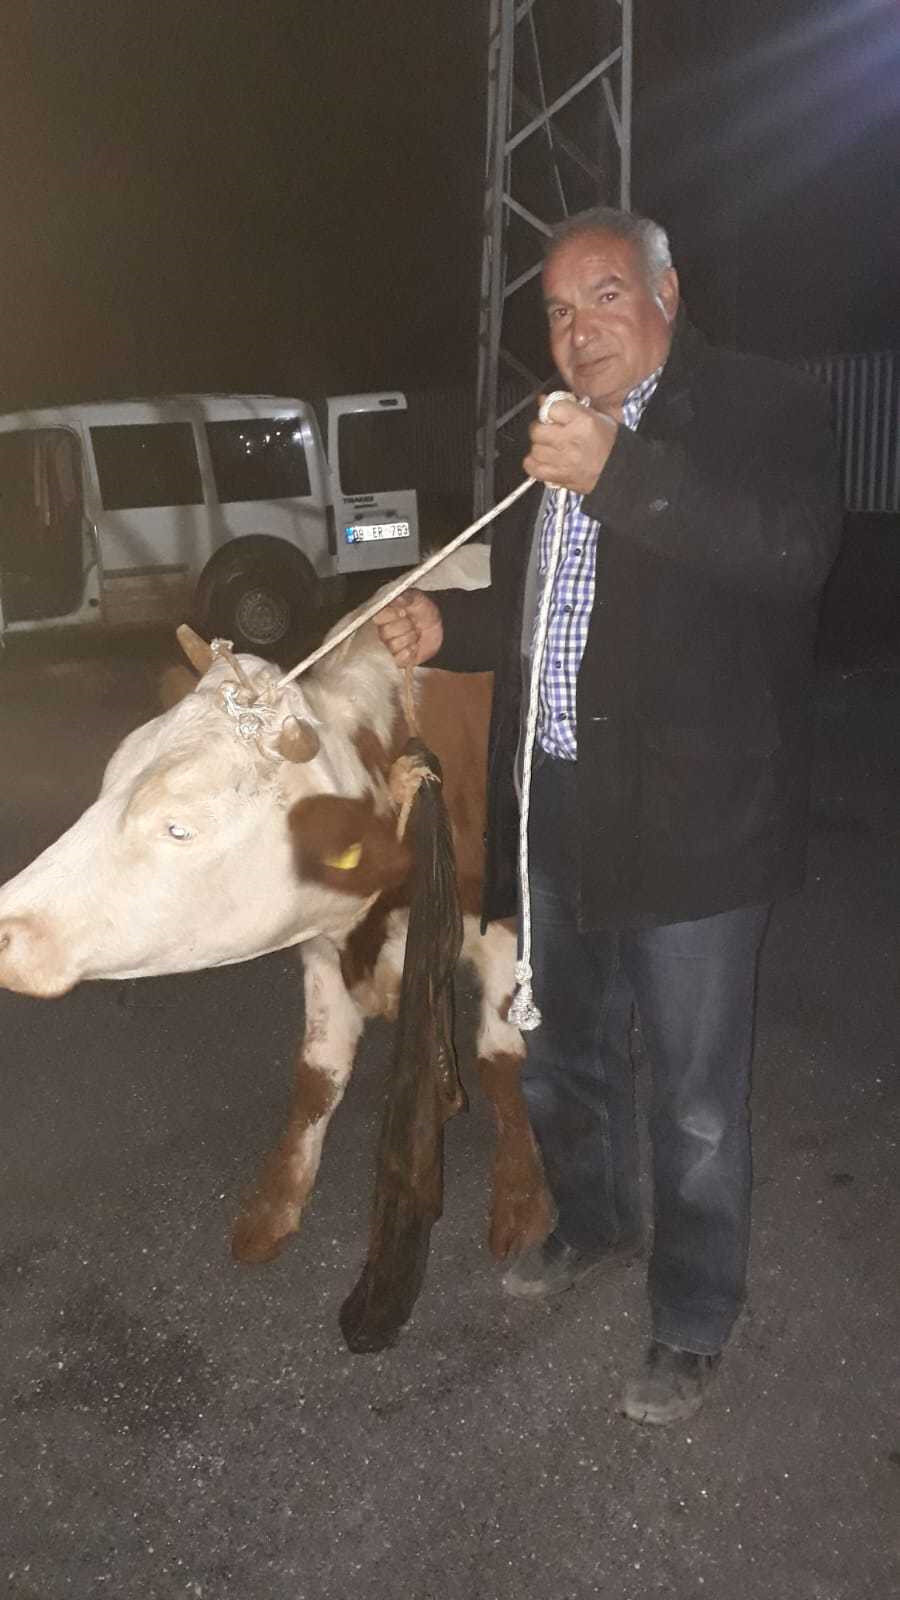 Şanlıurfa'nın Halfeti ilçesinde çalınan inek, Gaziantep'in Nizip ilçesinde polis tarafından bulundu. Polisler, ineği, çalındığından habersiz olan sahibine teslim etti.